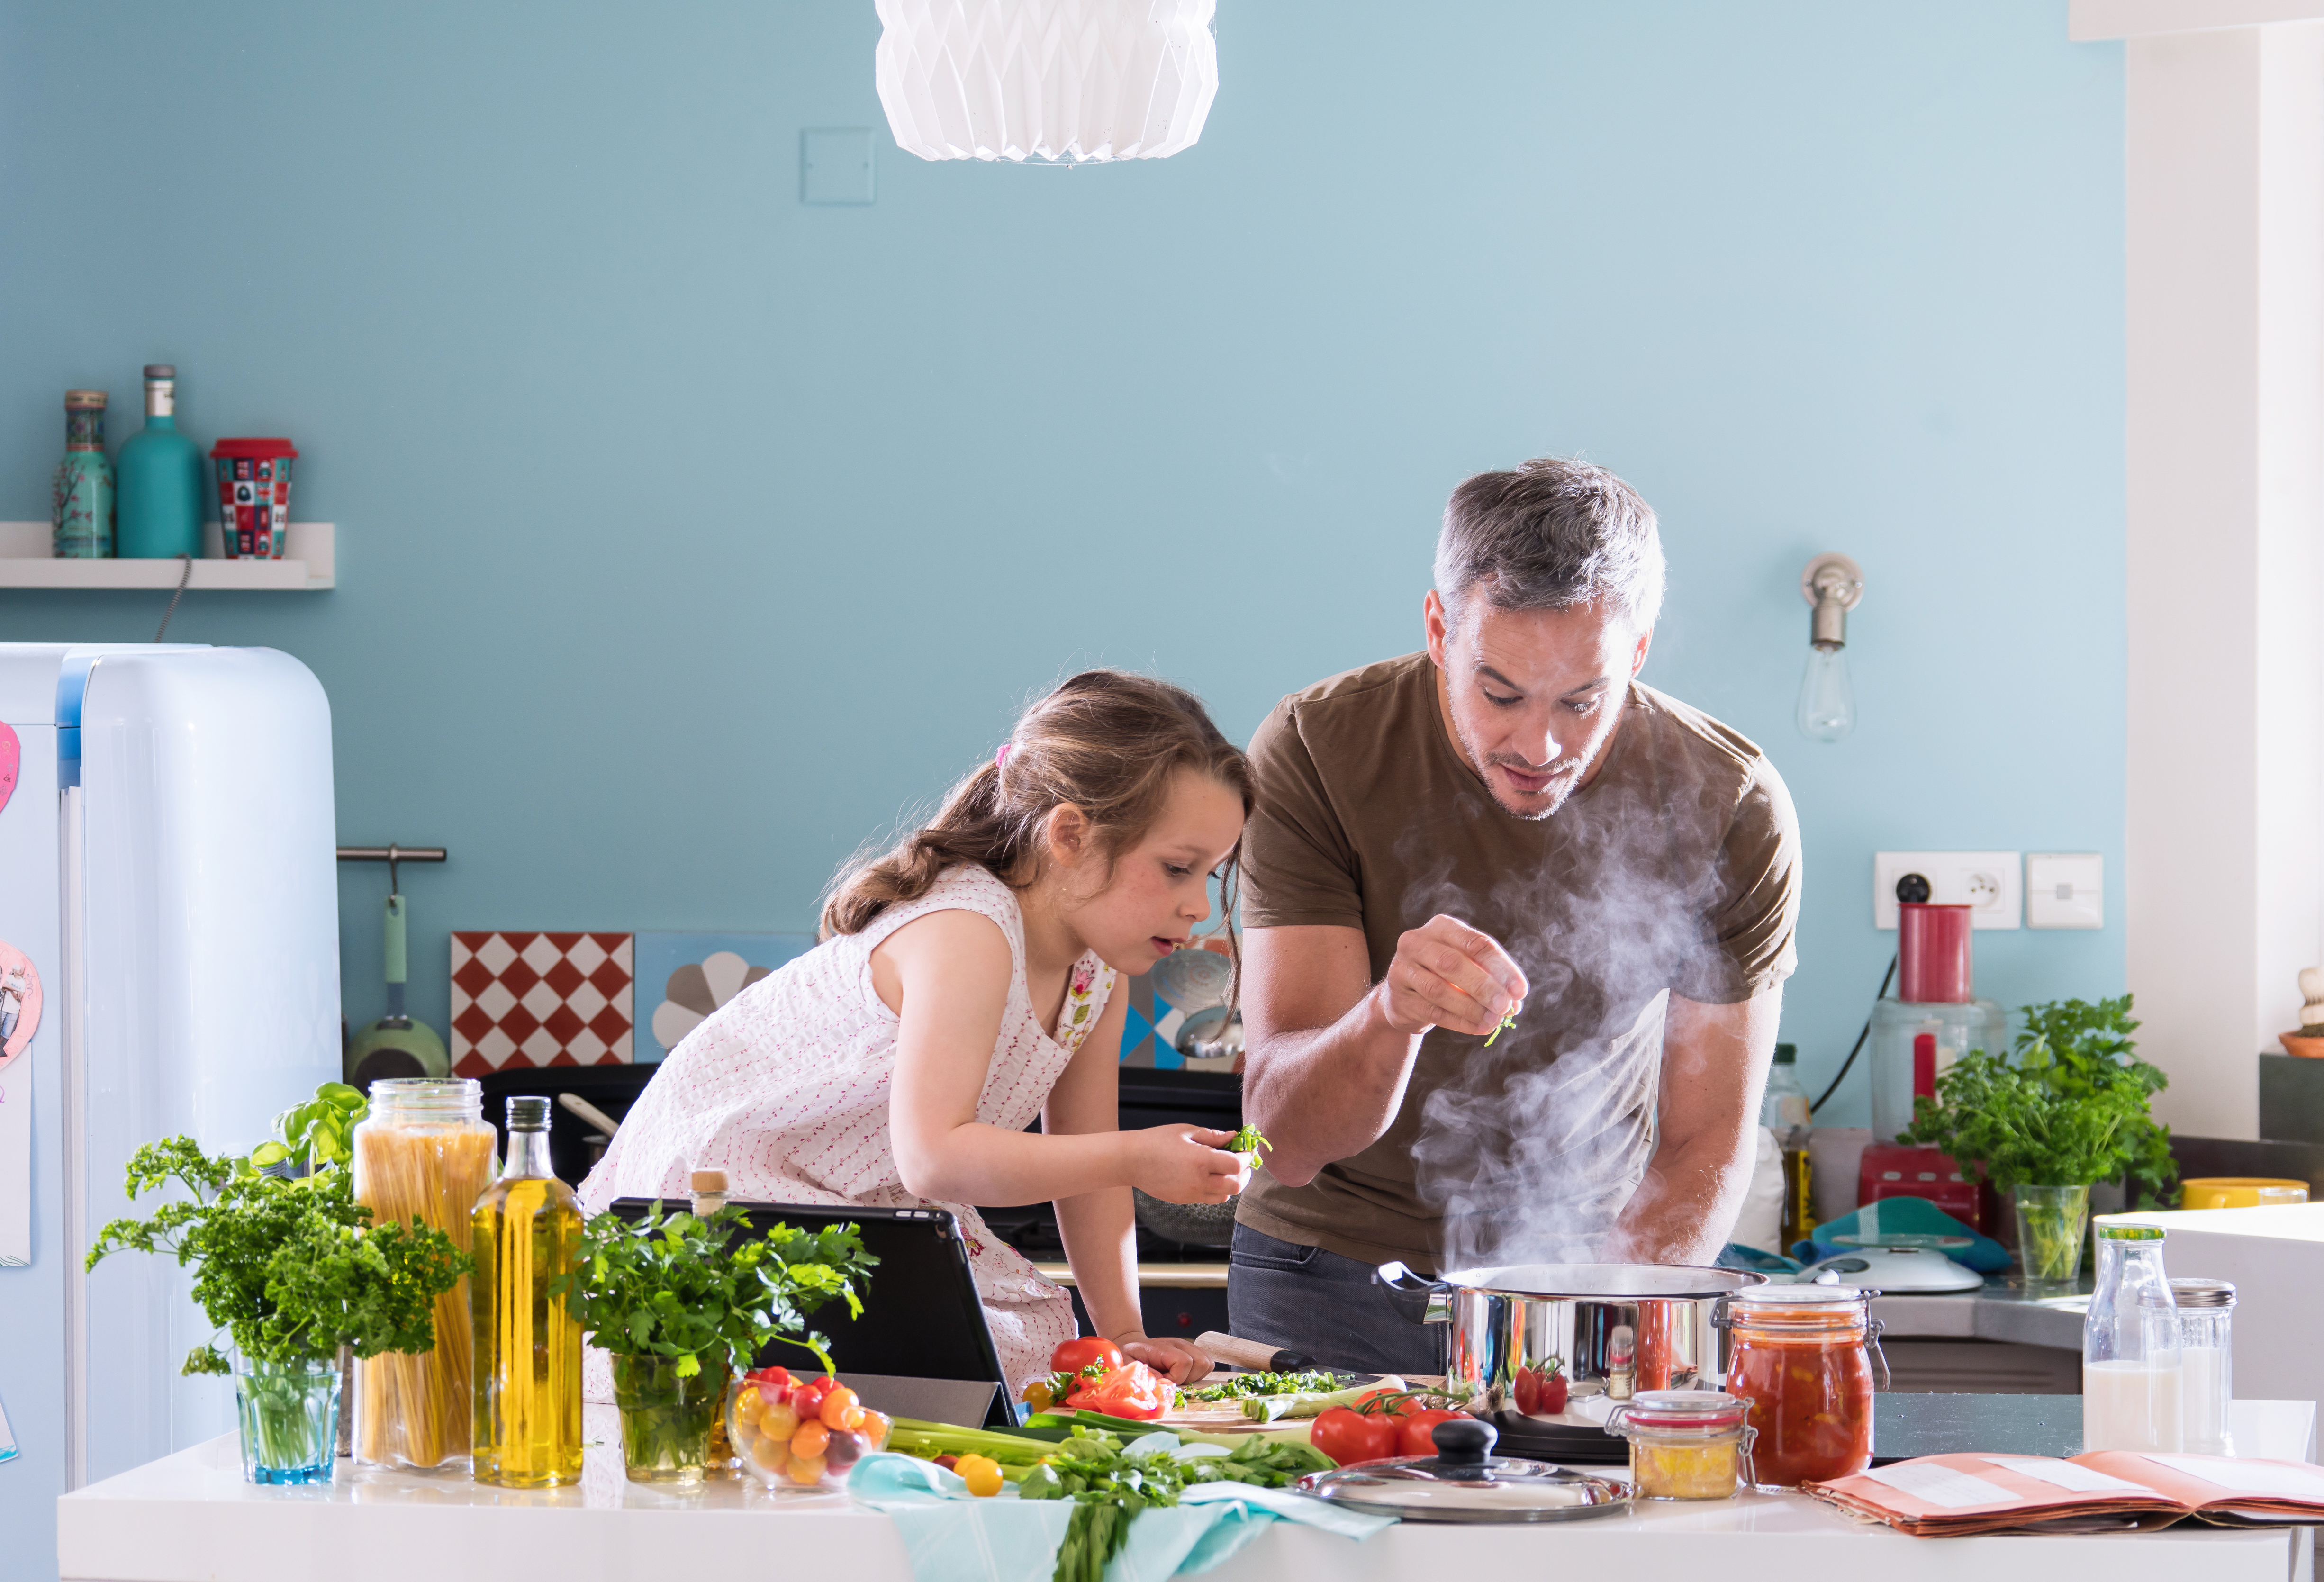 Un père en train de cuisiner avec sa petite fille dans la cuisine | Source : Shutterstock